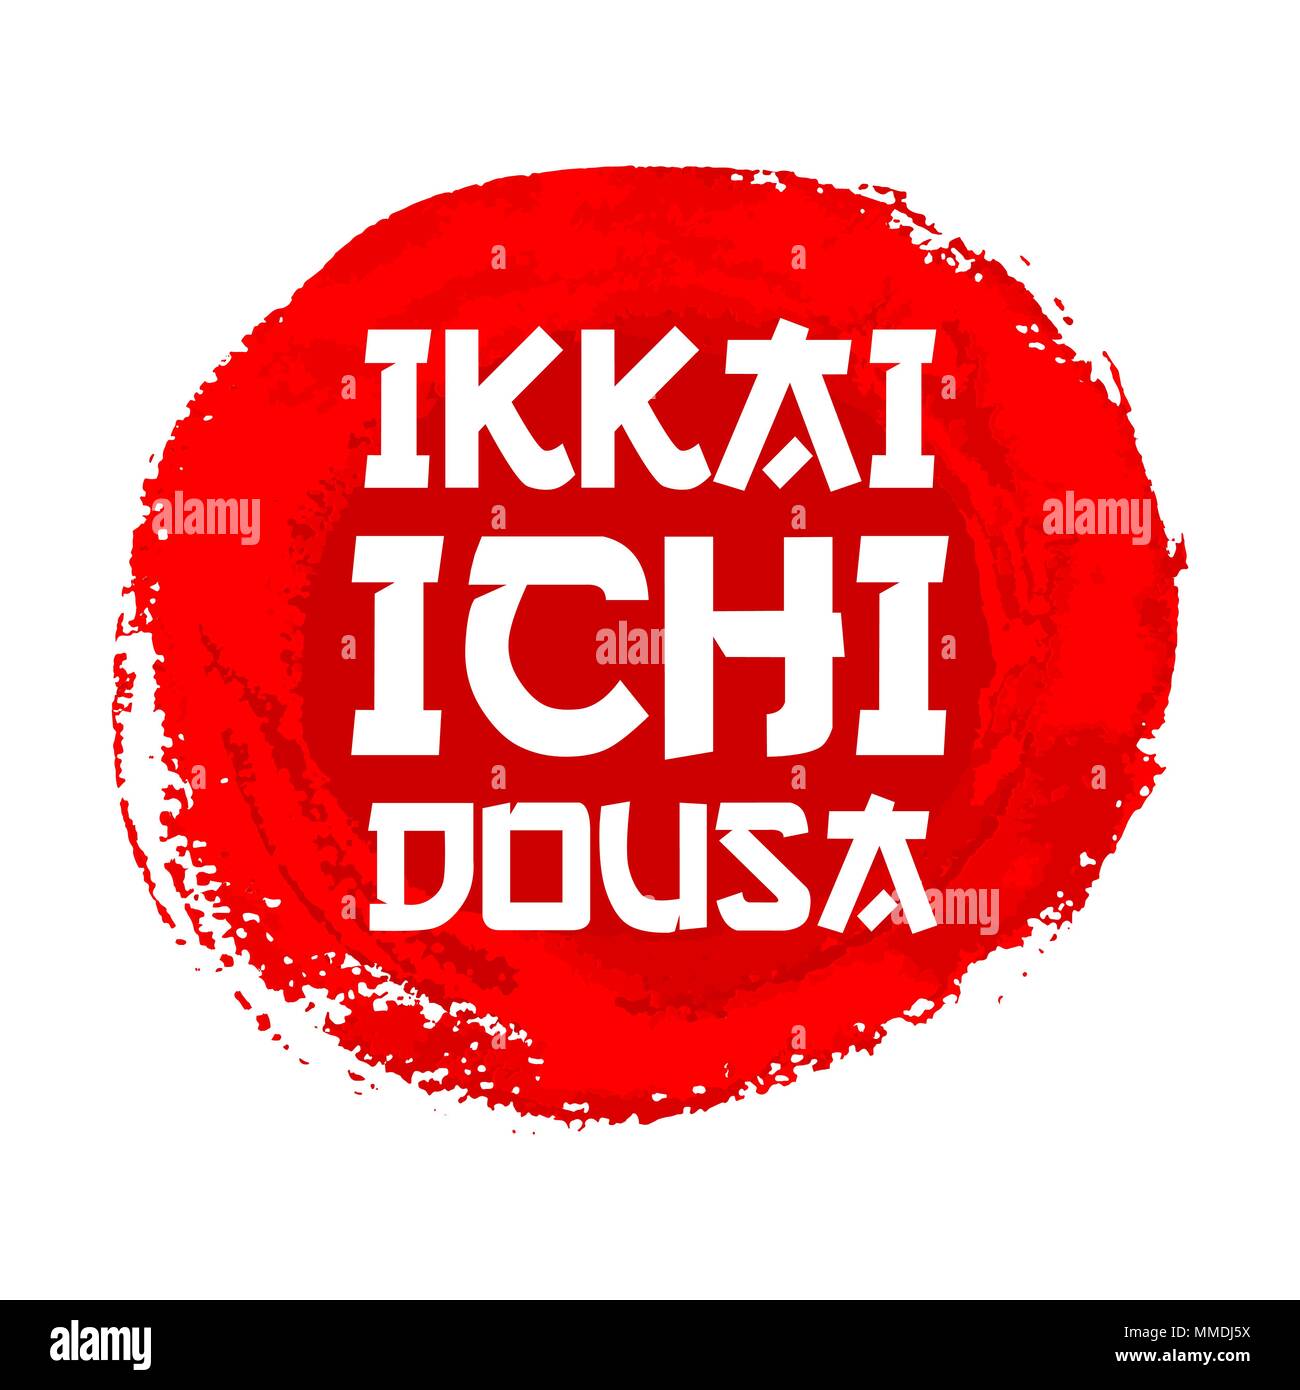 Hokkaido rote Zeichen Vektor. Grunge roter Kreis Stempel isoliert auf weißem Hintergrund. Chinesische Tinte oder Gummi texturierte Sun Poster mit Zitat Ikkai Ichi Dousa - Übersetzung eine Sache zu einer Zeit Stock Vektor